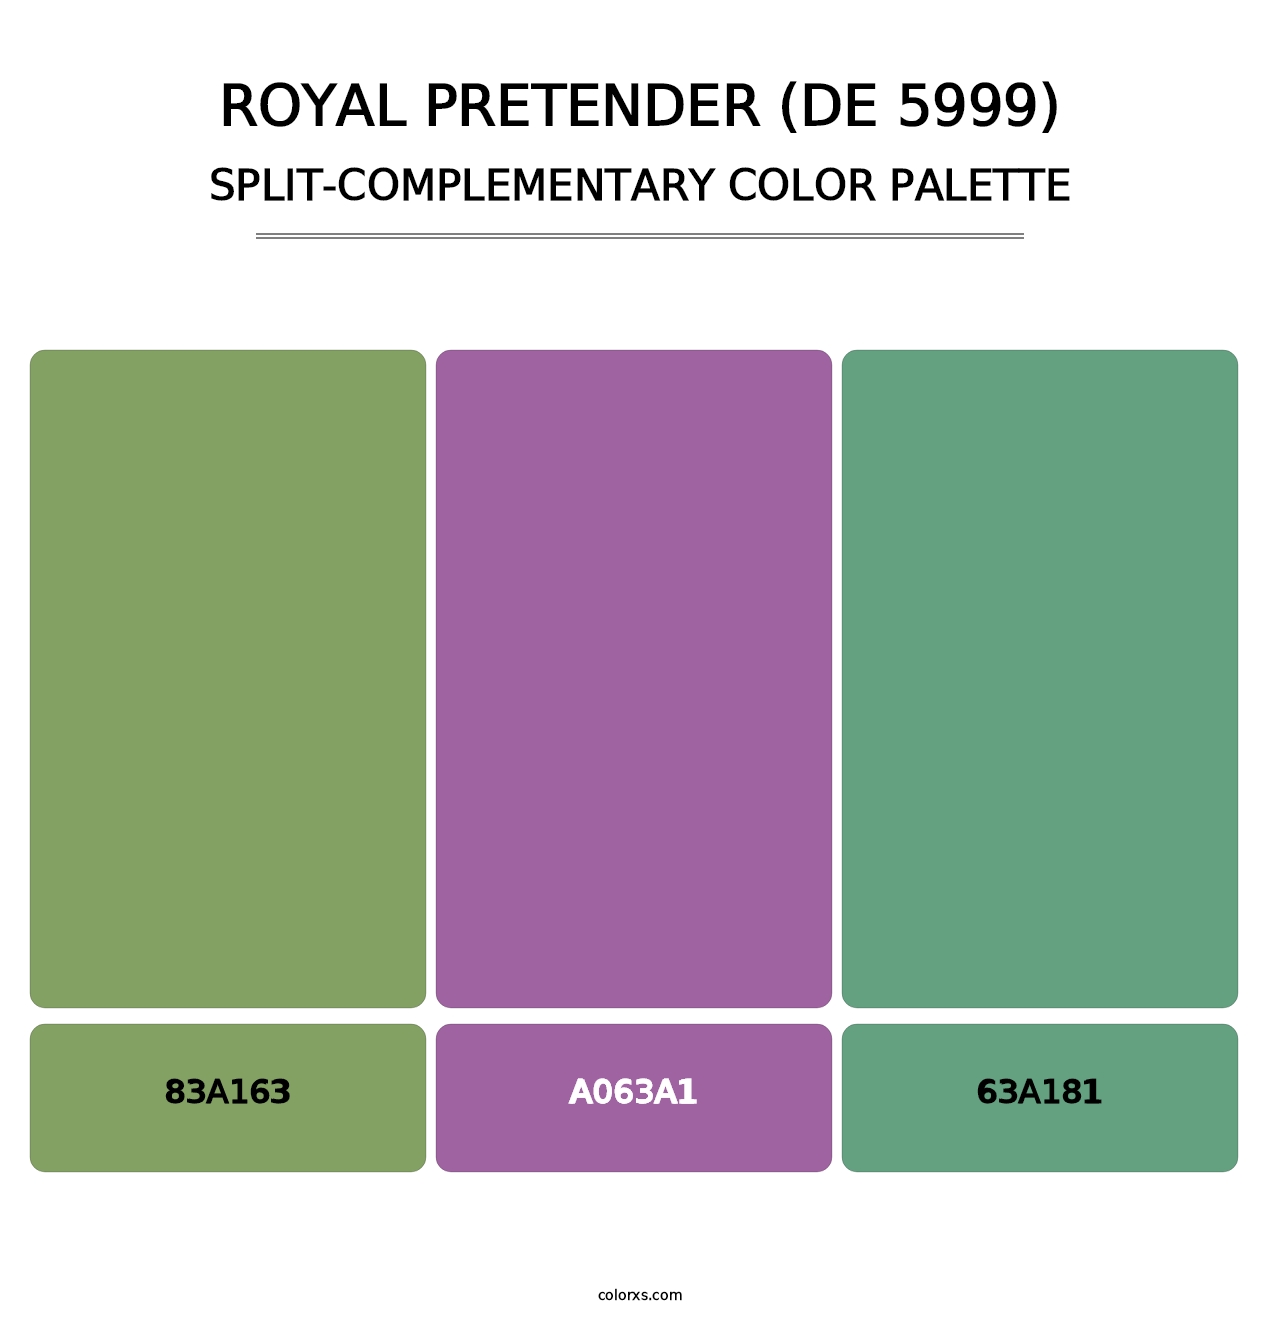 Royal Pretender (DE 5999) - Split-Complementary Color Palette